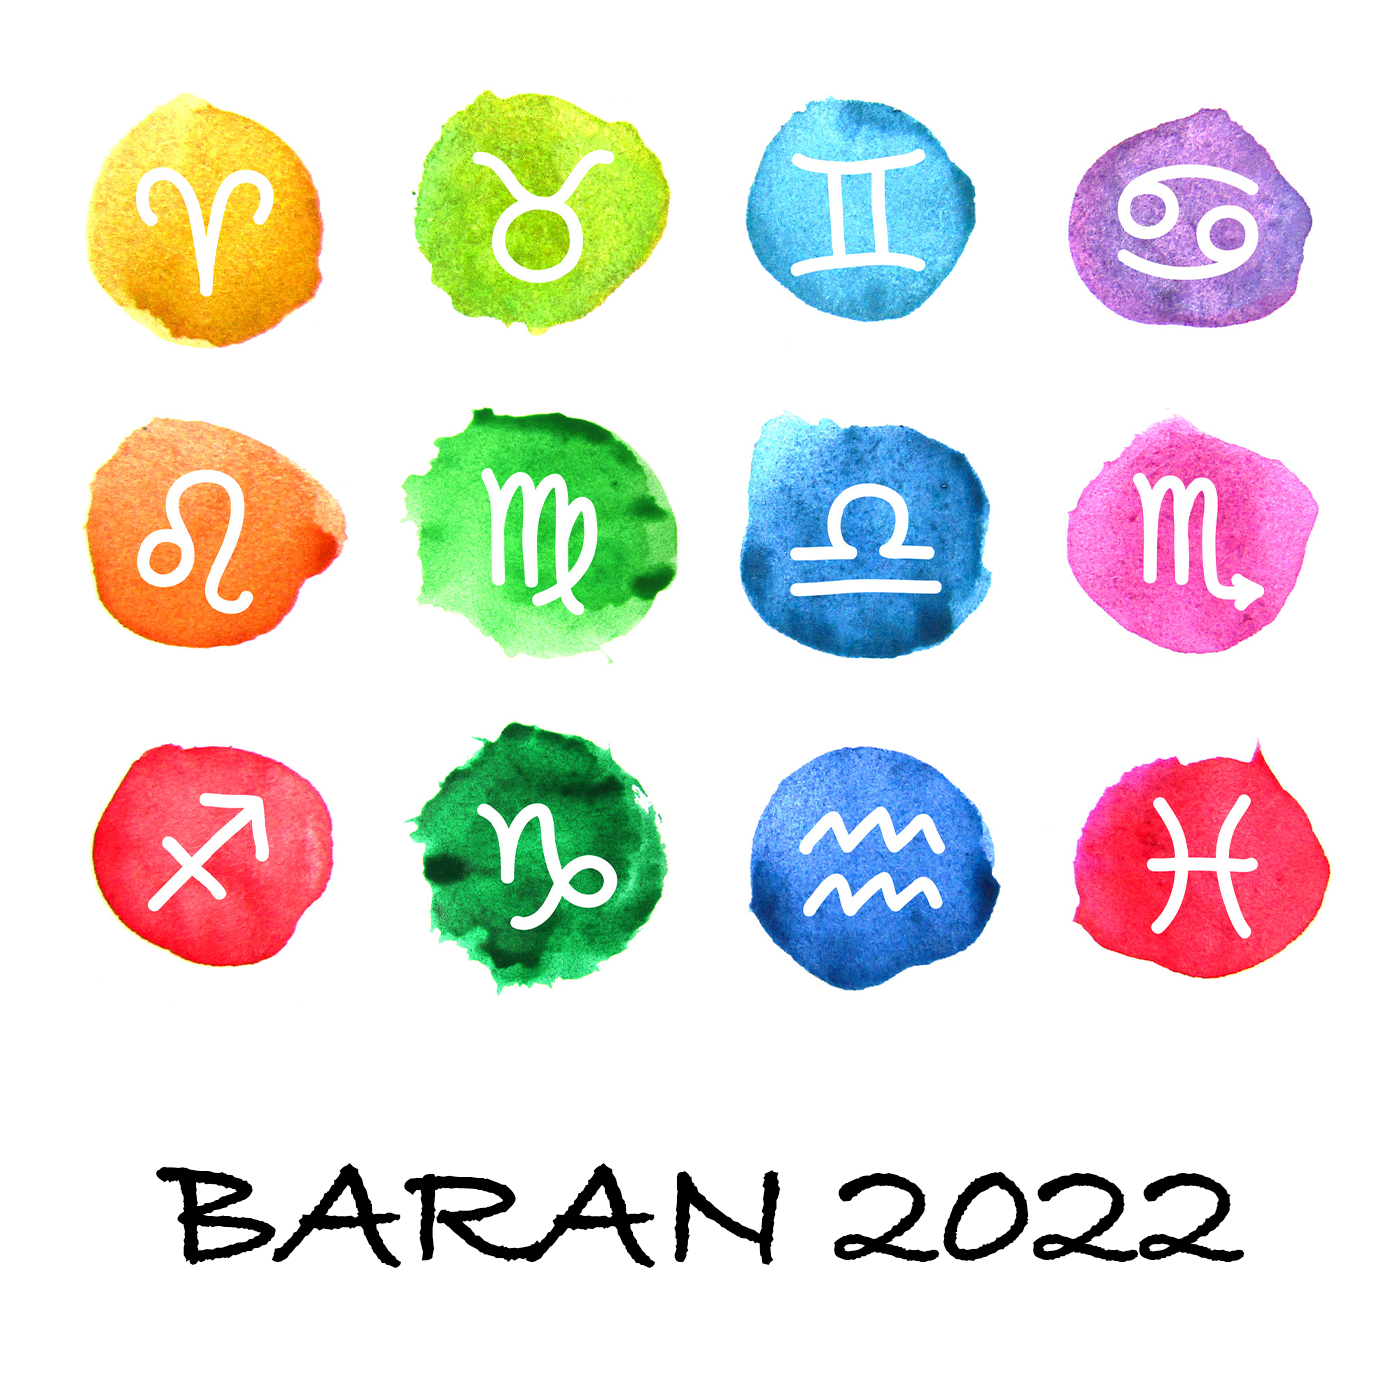 ROČNÝ HOROSKOP - BARAN 2022